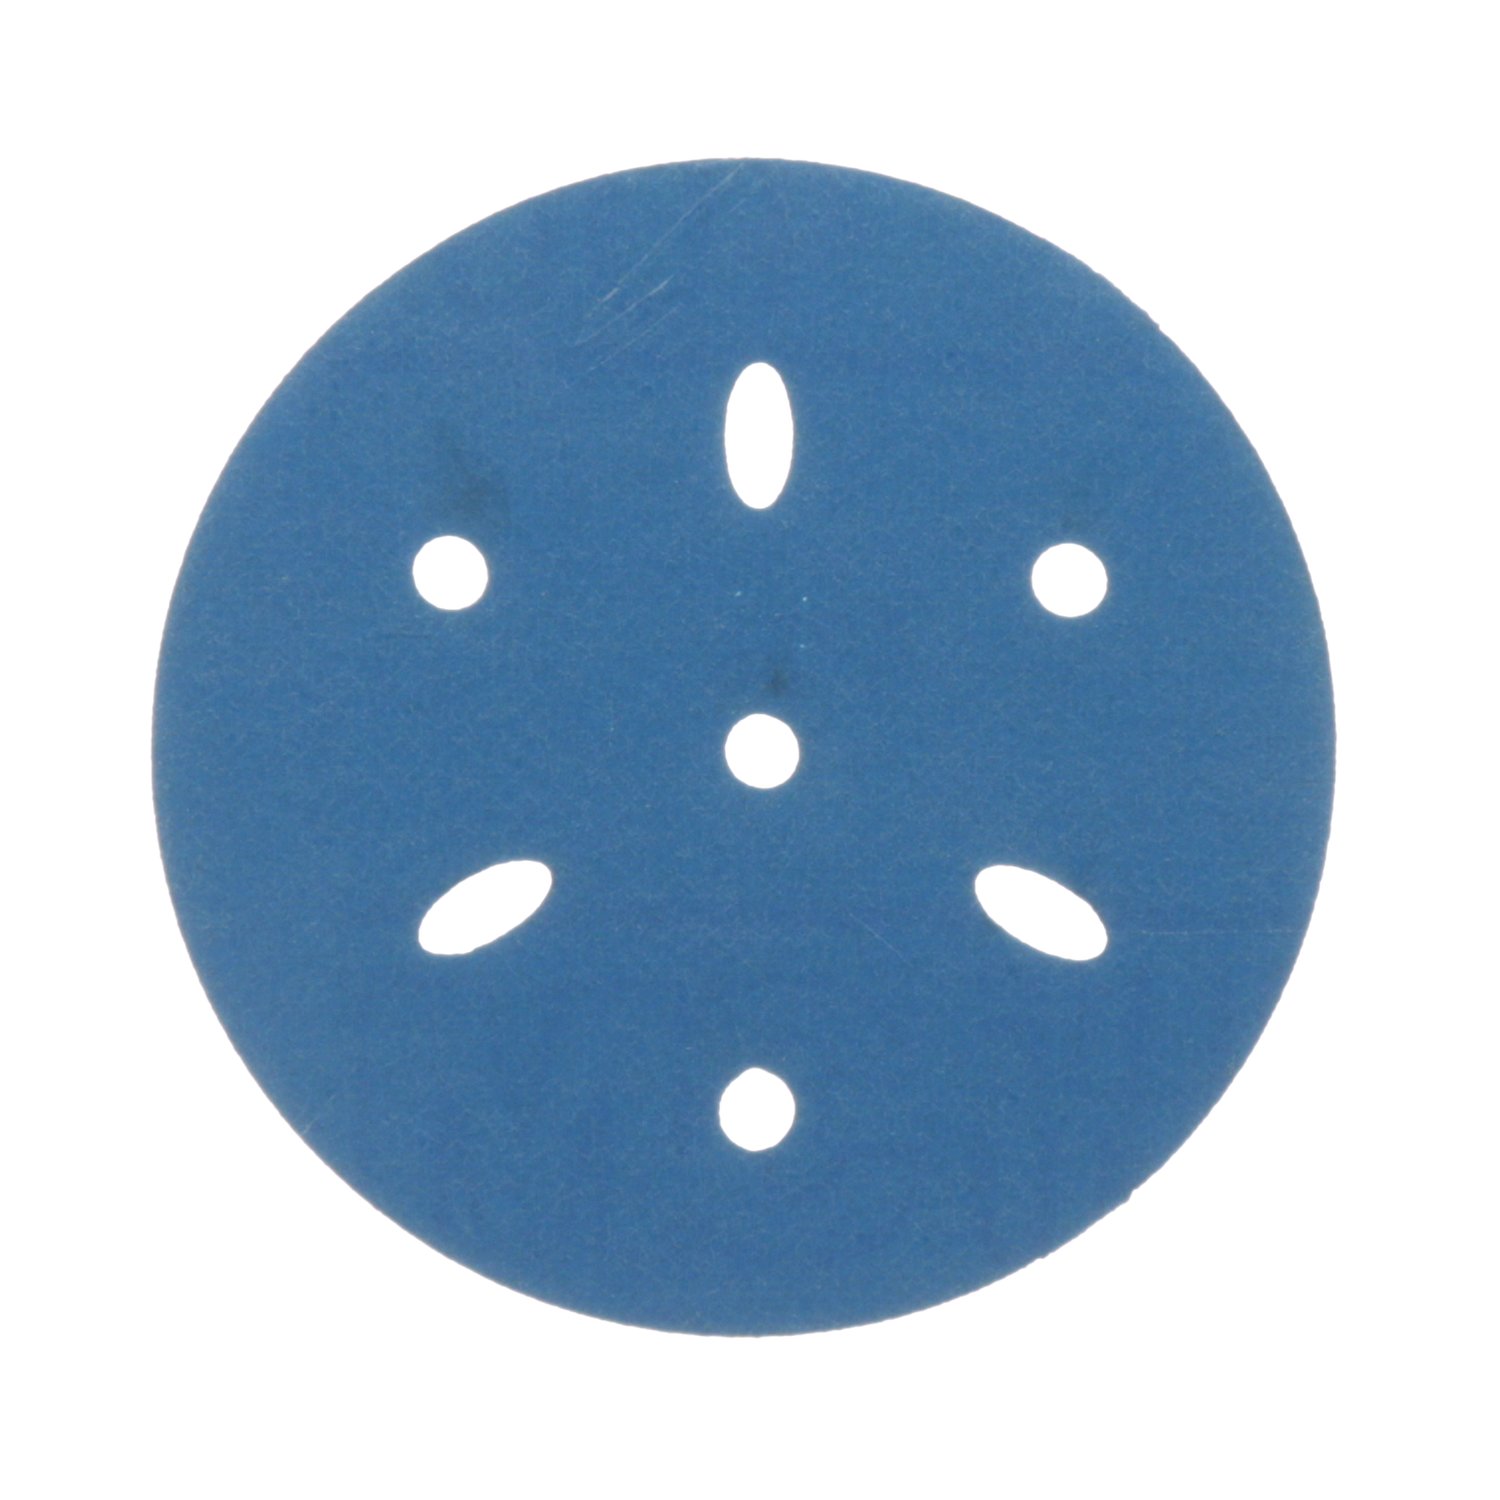 7100090970 - 3M Hookit Blue Abrasive Disc 321U Multi-hole, 36151, 3 in, 400, 50
discs per carton, 4 cartons per case